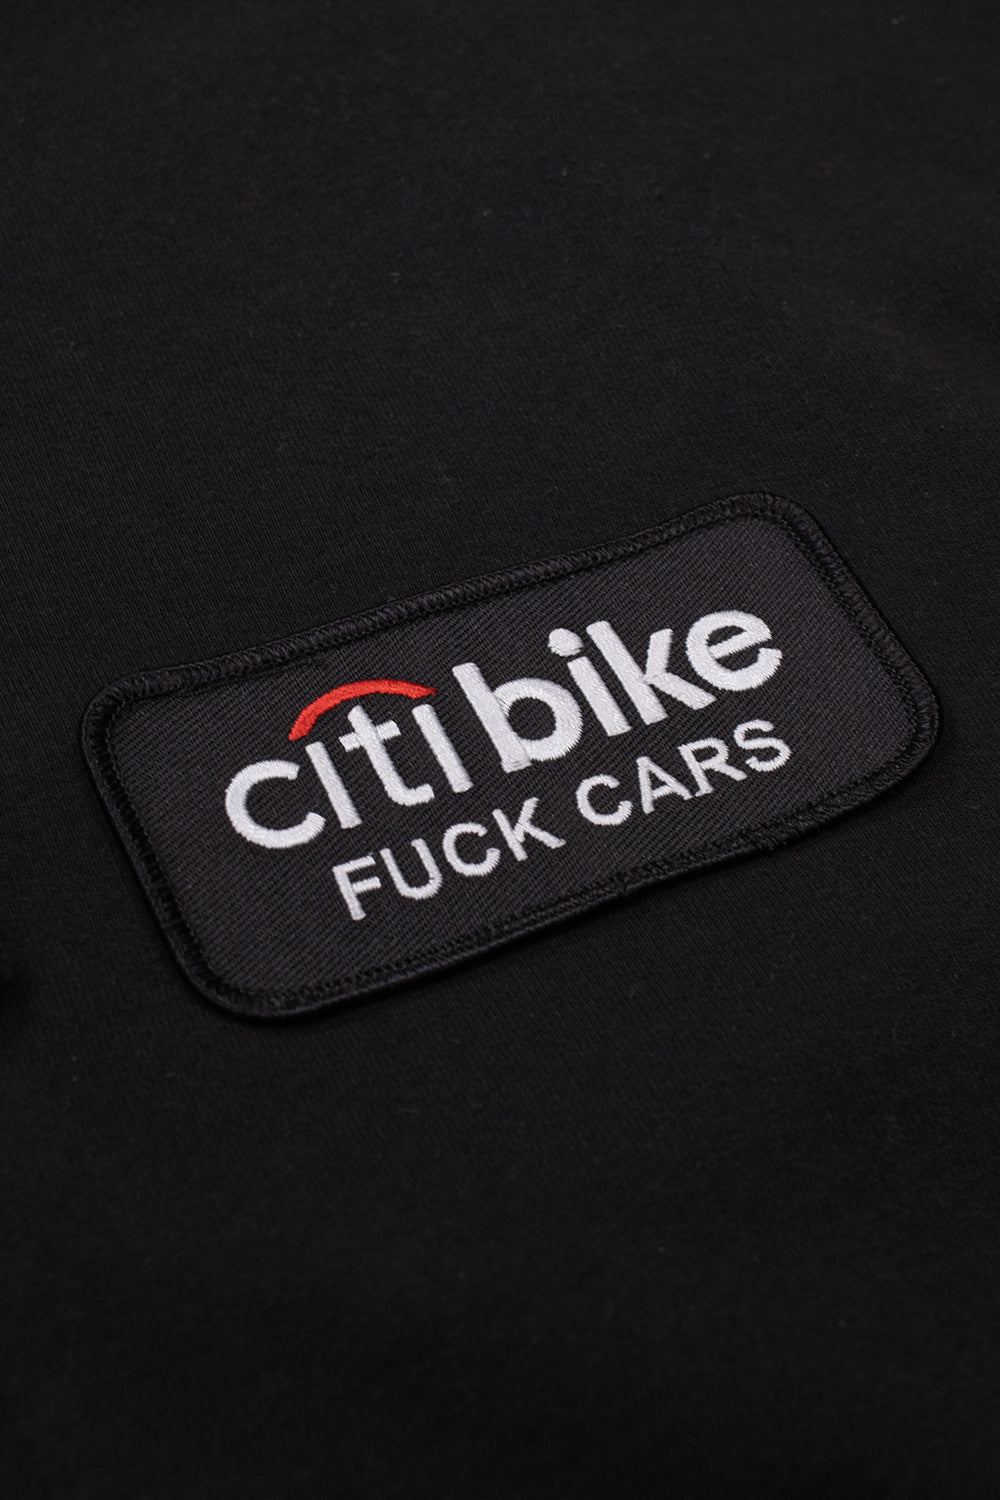 CitiBikeBoyz Eff Cars Zip Hoodie Black - BONKERS